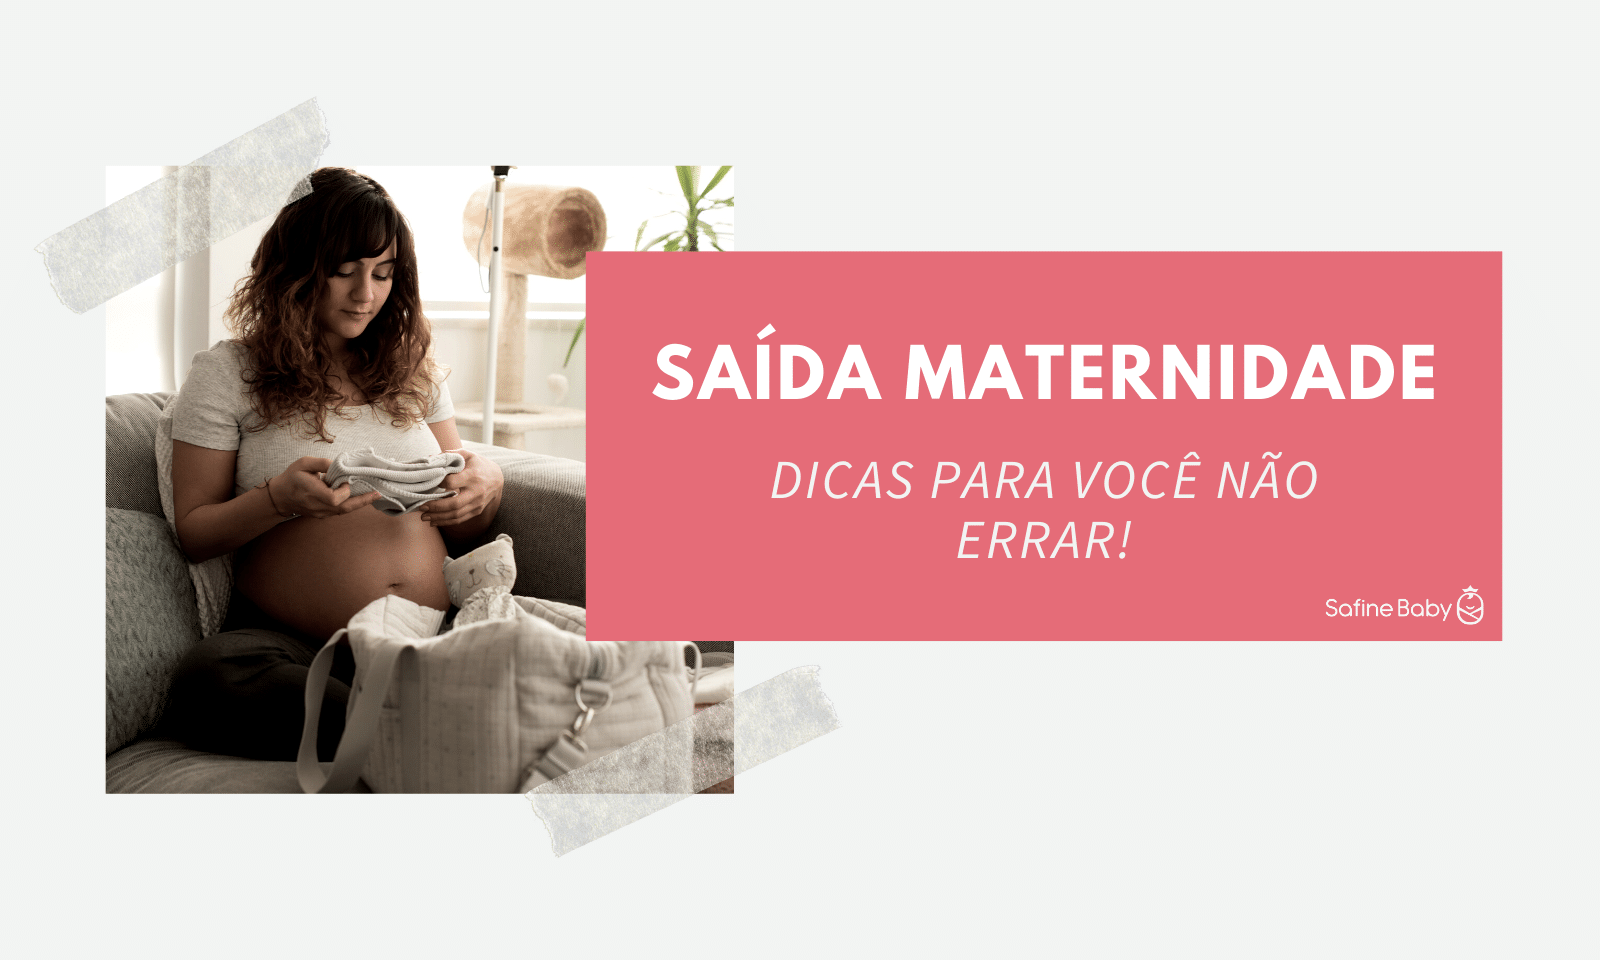 safinebaby.com.br saida maternidade dicas para voce nao errar safine baby blog